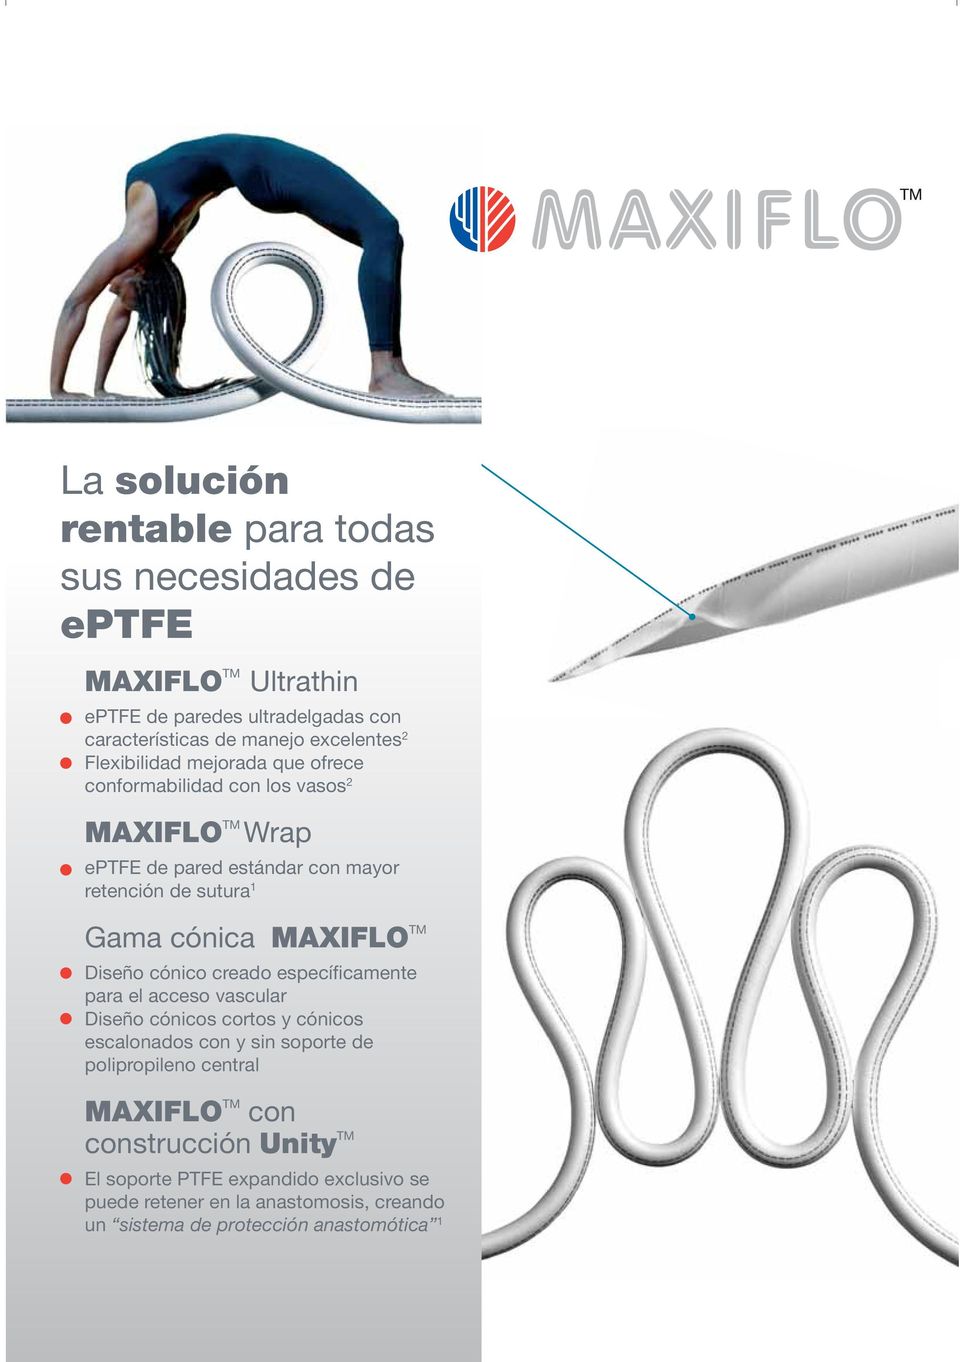 MAXIFLO Diseño cónico creado específicamente para el acceso vascular Diseño cónicos cortos y cónicos escalonados con y sin soporte de